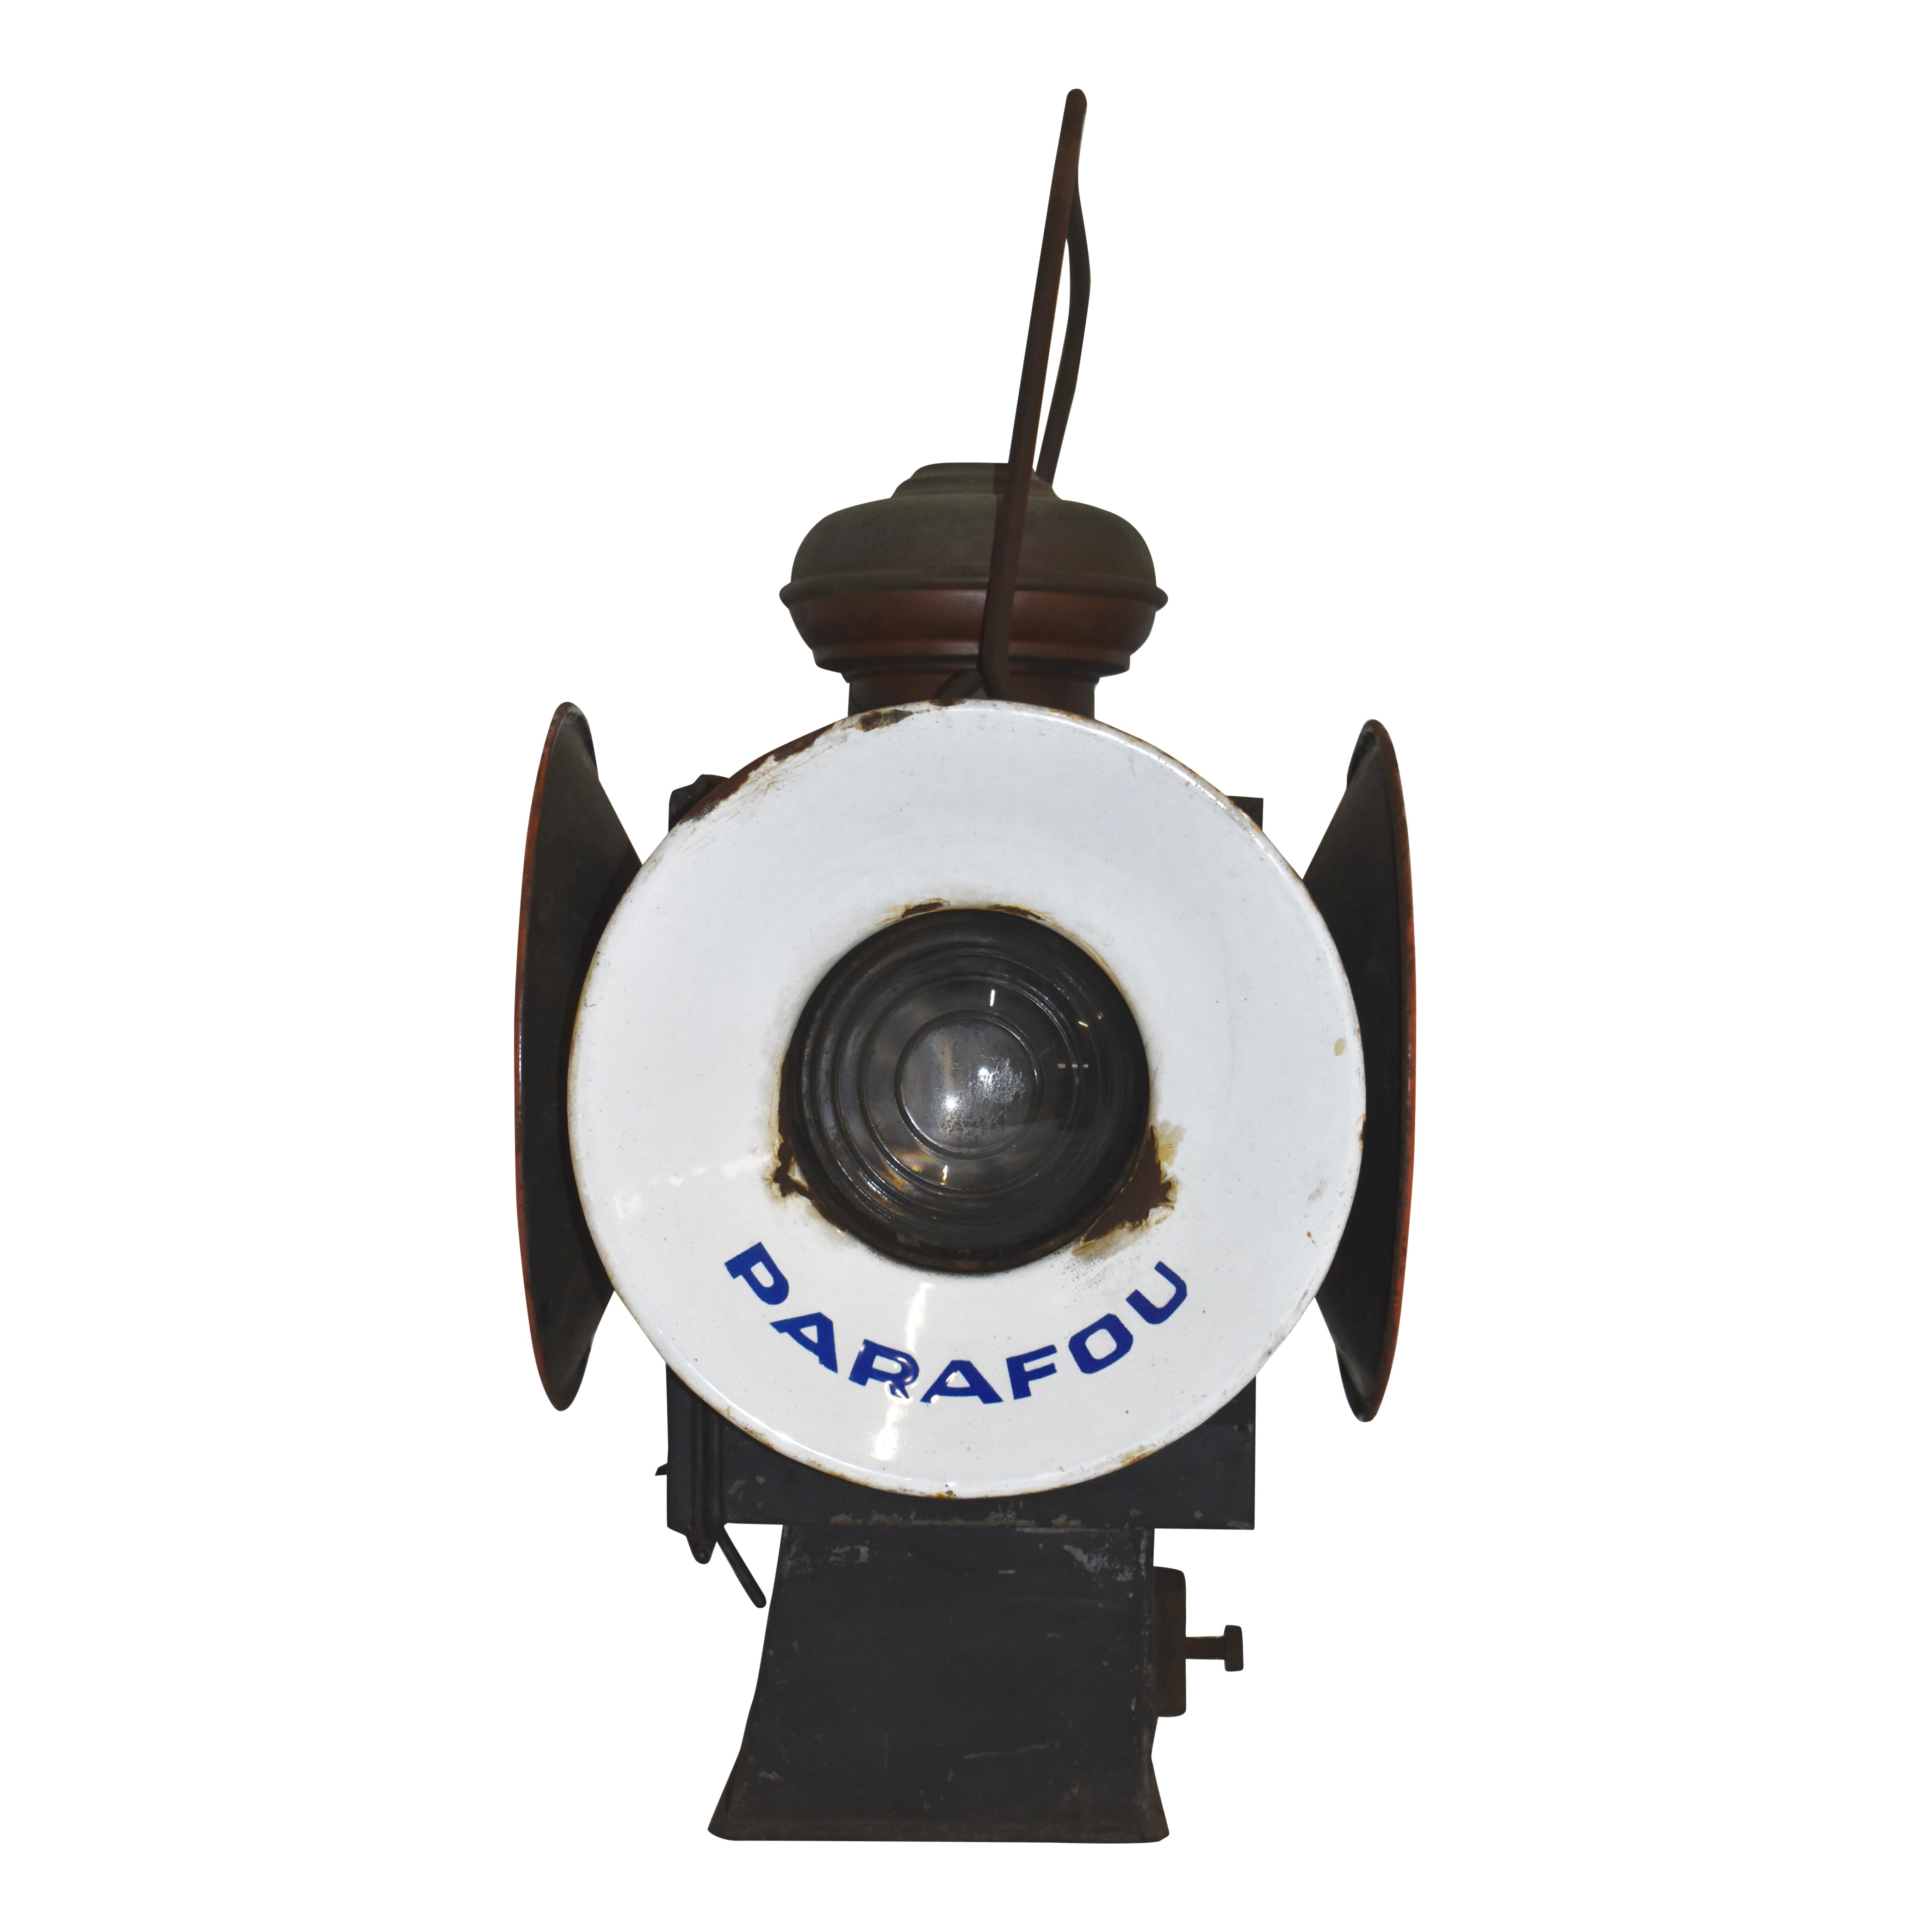 Belgian Railroad Signal Lamp with Oil Burner